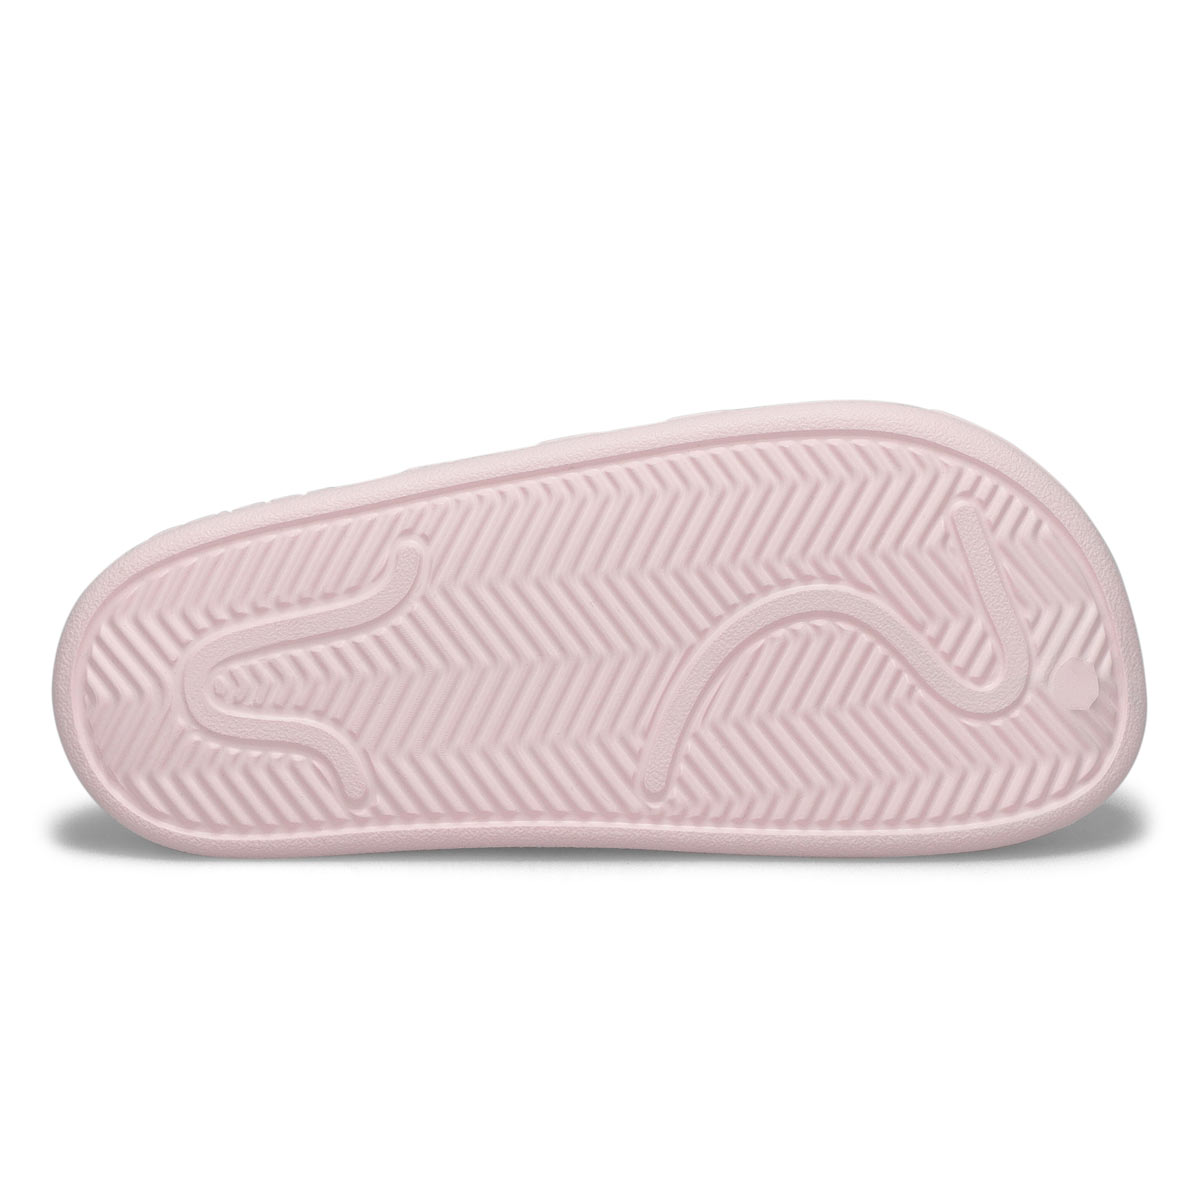 Women's Adilette Clog Slip On Shoe - Pink/White